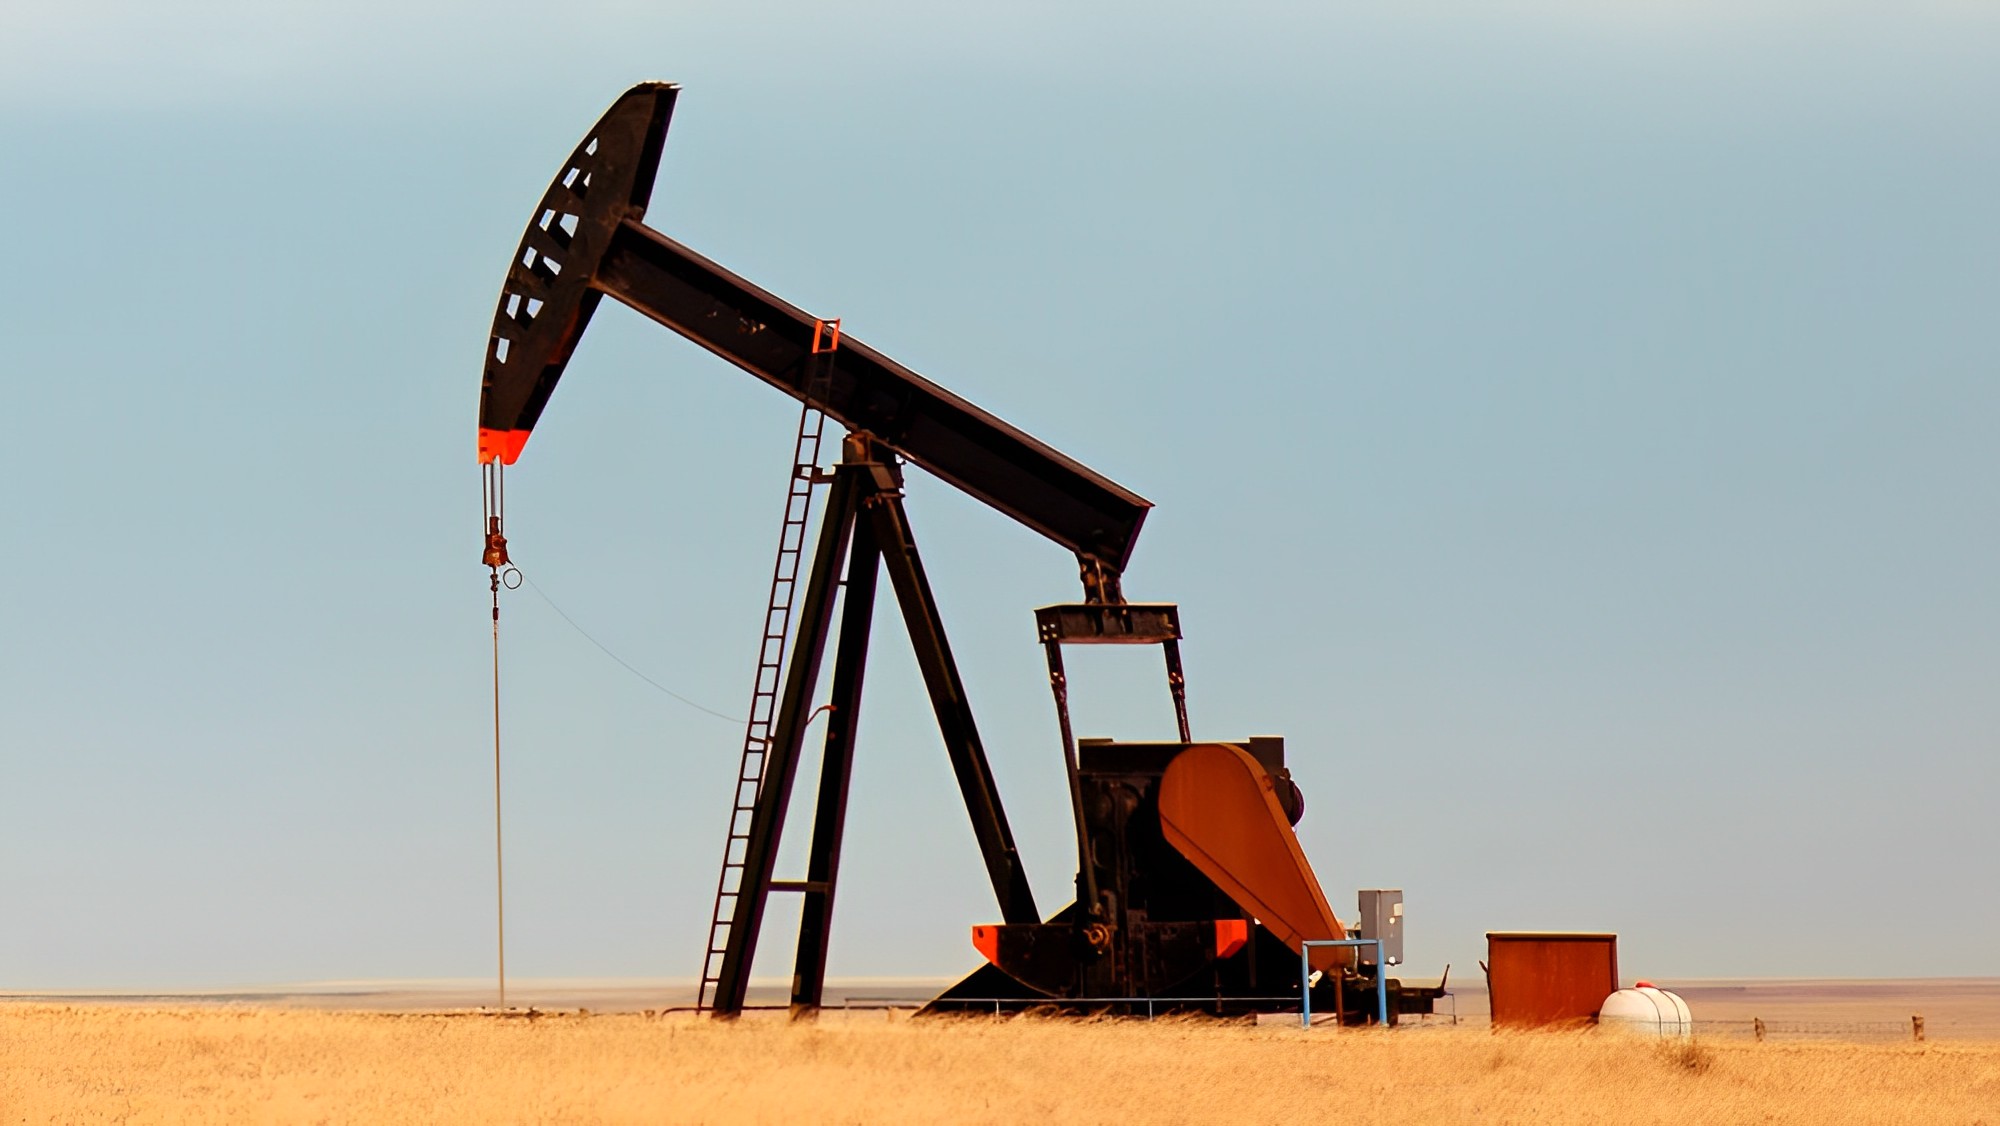 منصة حفر داخل حقل للنفط وصناعة النفط والغاز تحقق مكاسب لولاية تكساس